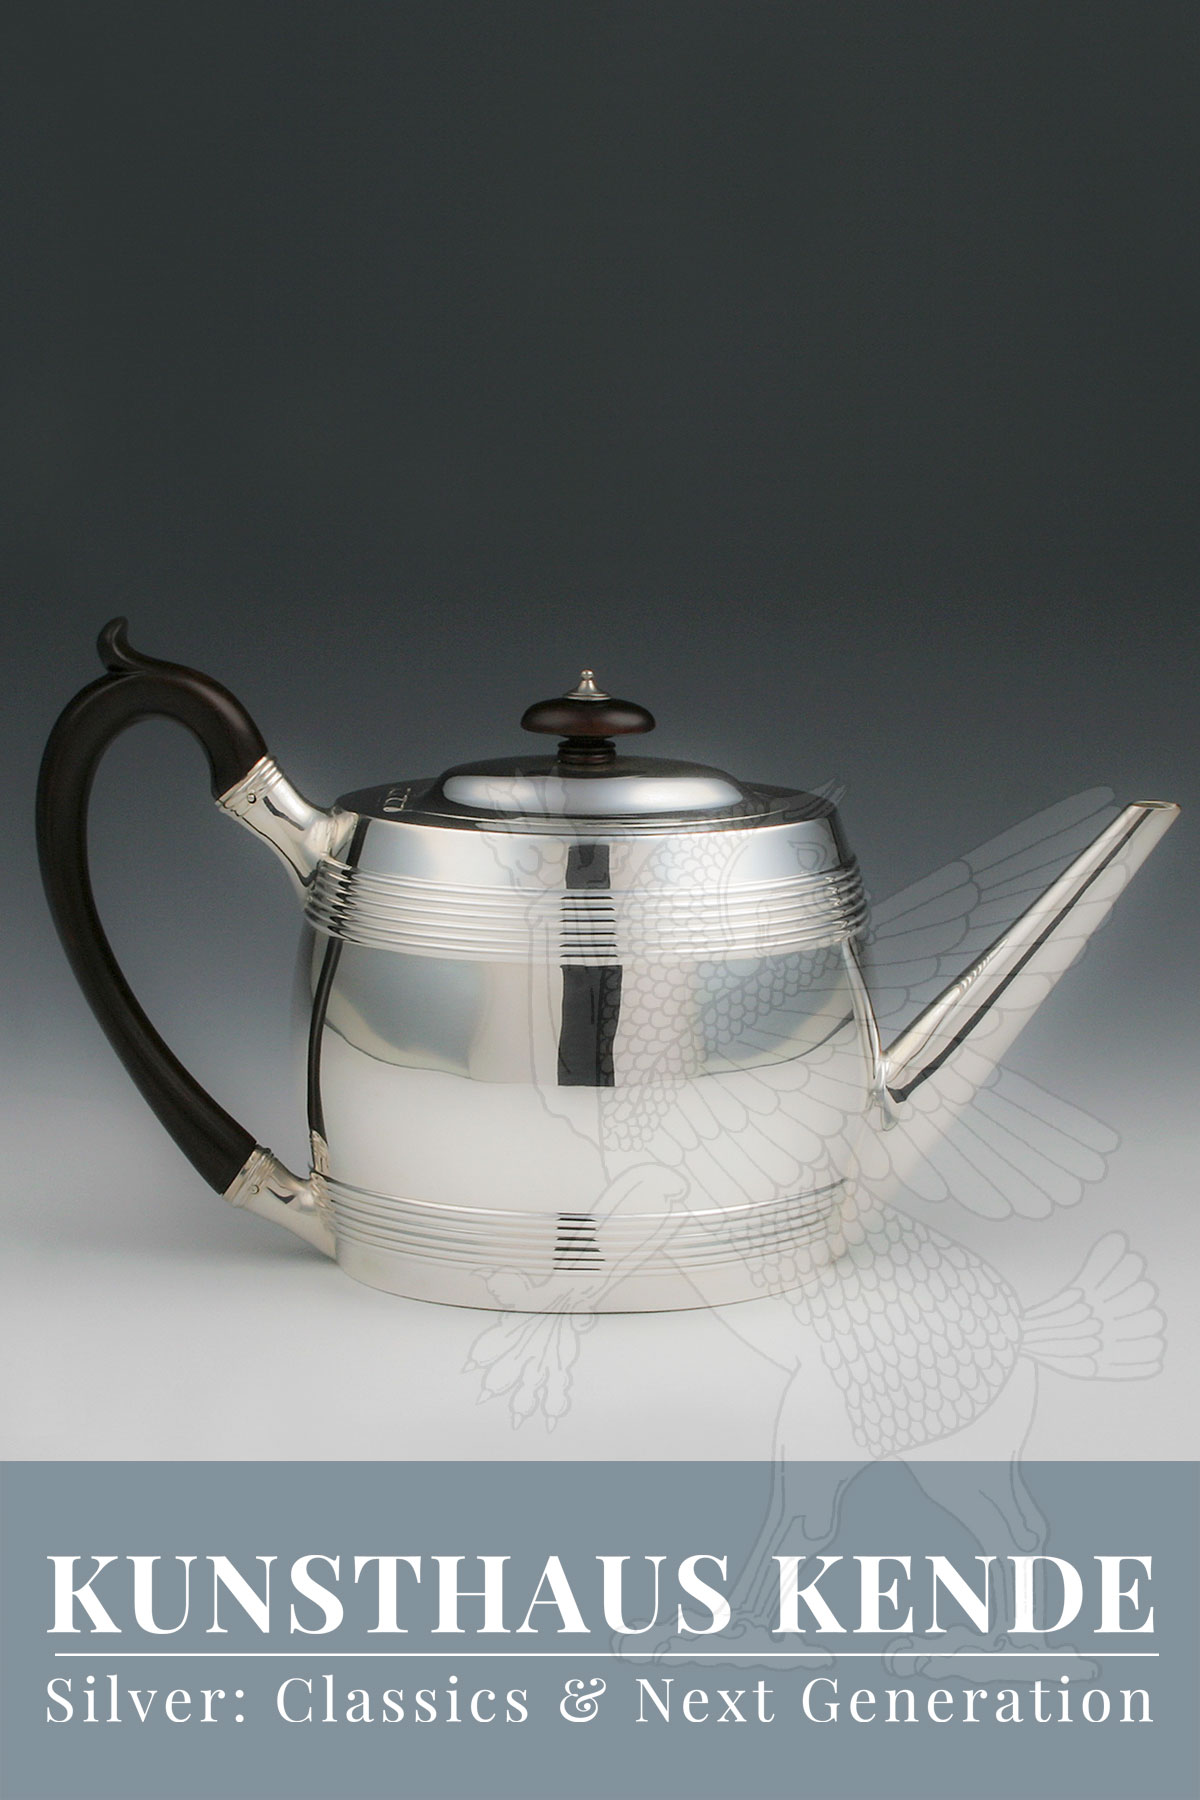 925 Silber Teekanne London 1795